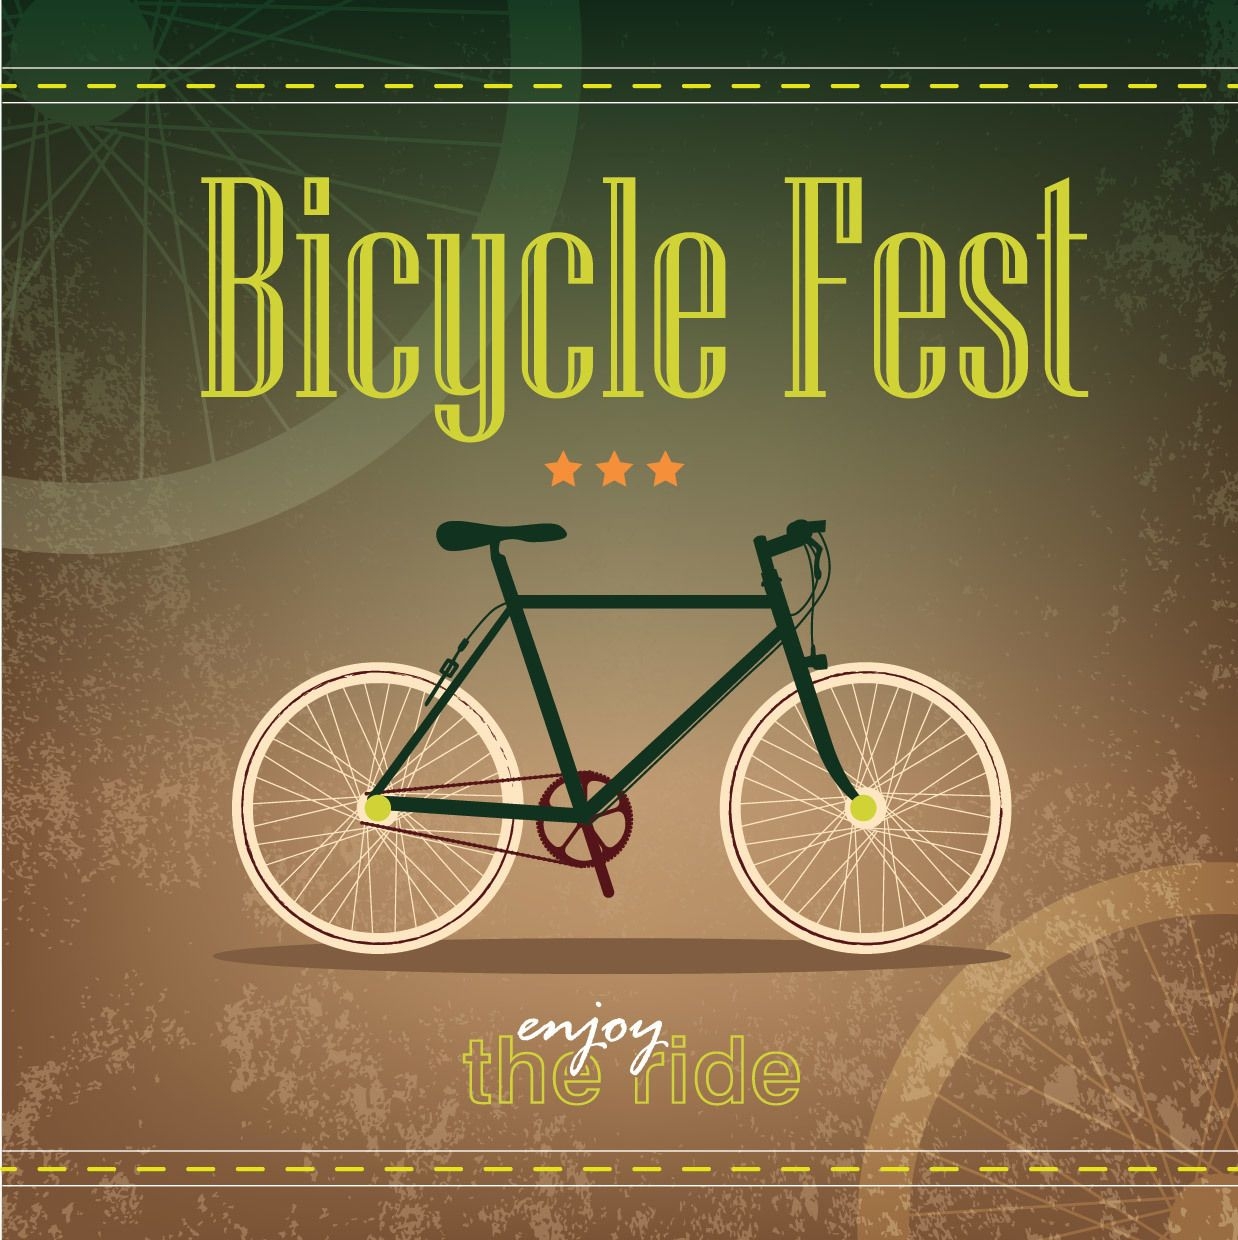 Modelo de pôster Retro Grungy Bicicleta Fest